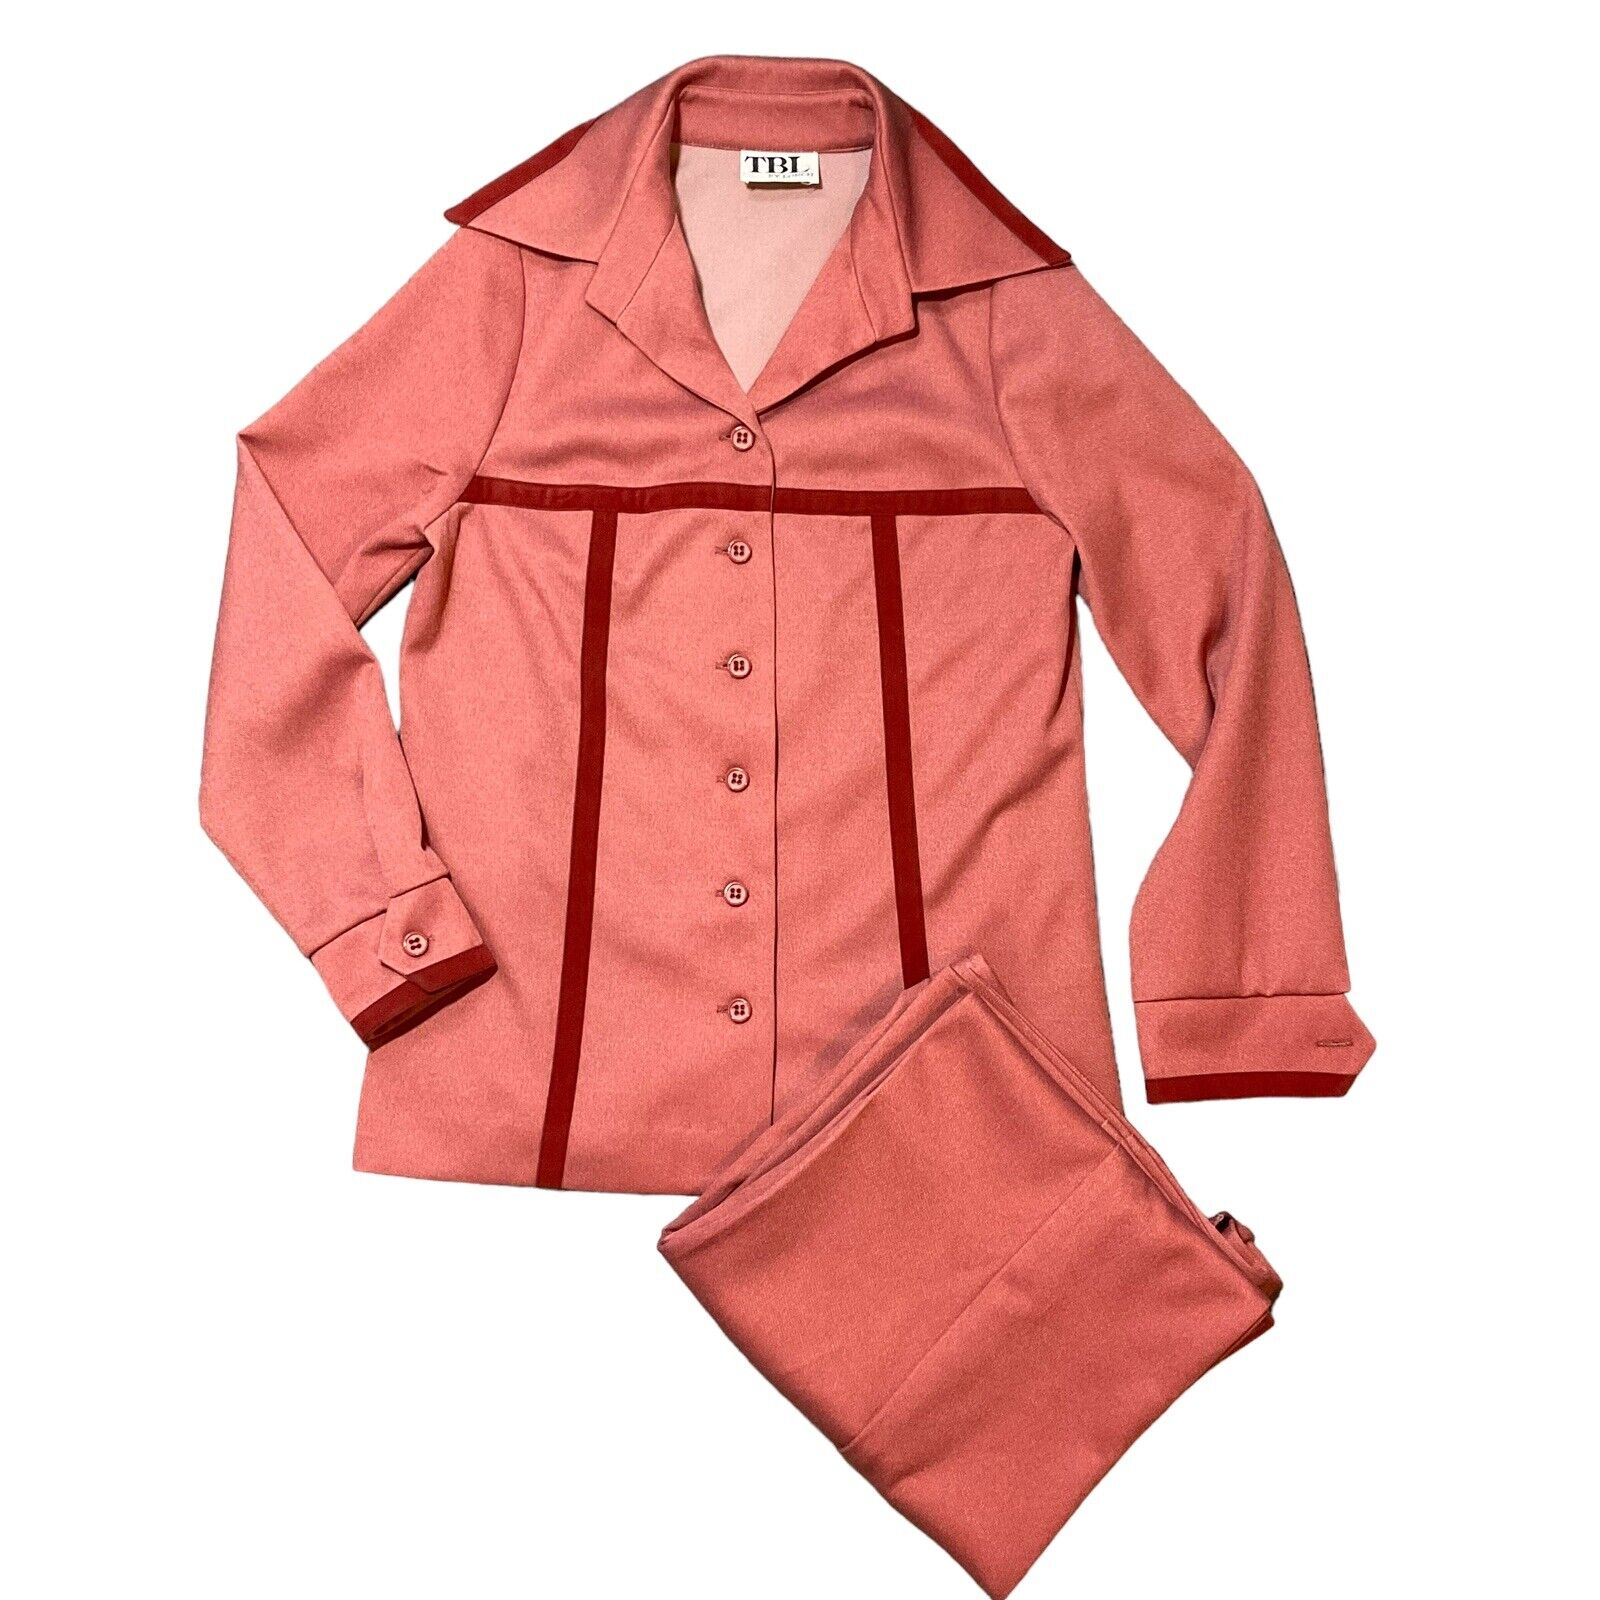 Vintage Lorch Women 26 Pants Suit Pink 70s Velvet Trim Pointed Collar Corp Core